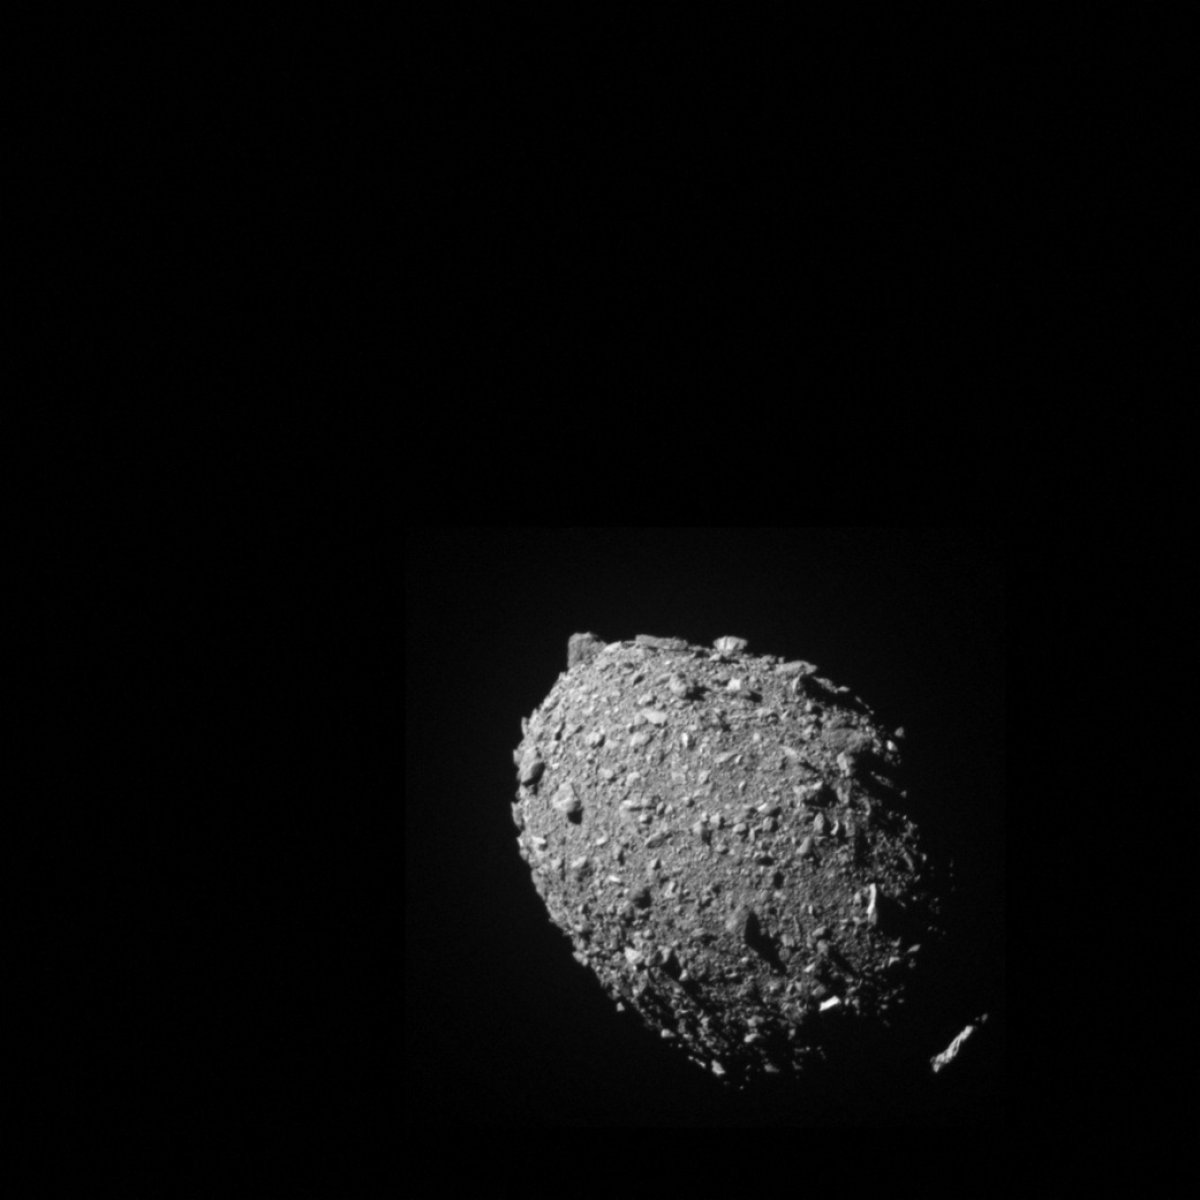 NASA nın DART misyonu başarılı: Asteroidin yörüngesi değişti #2